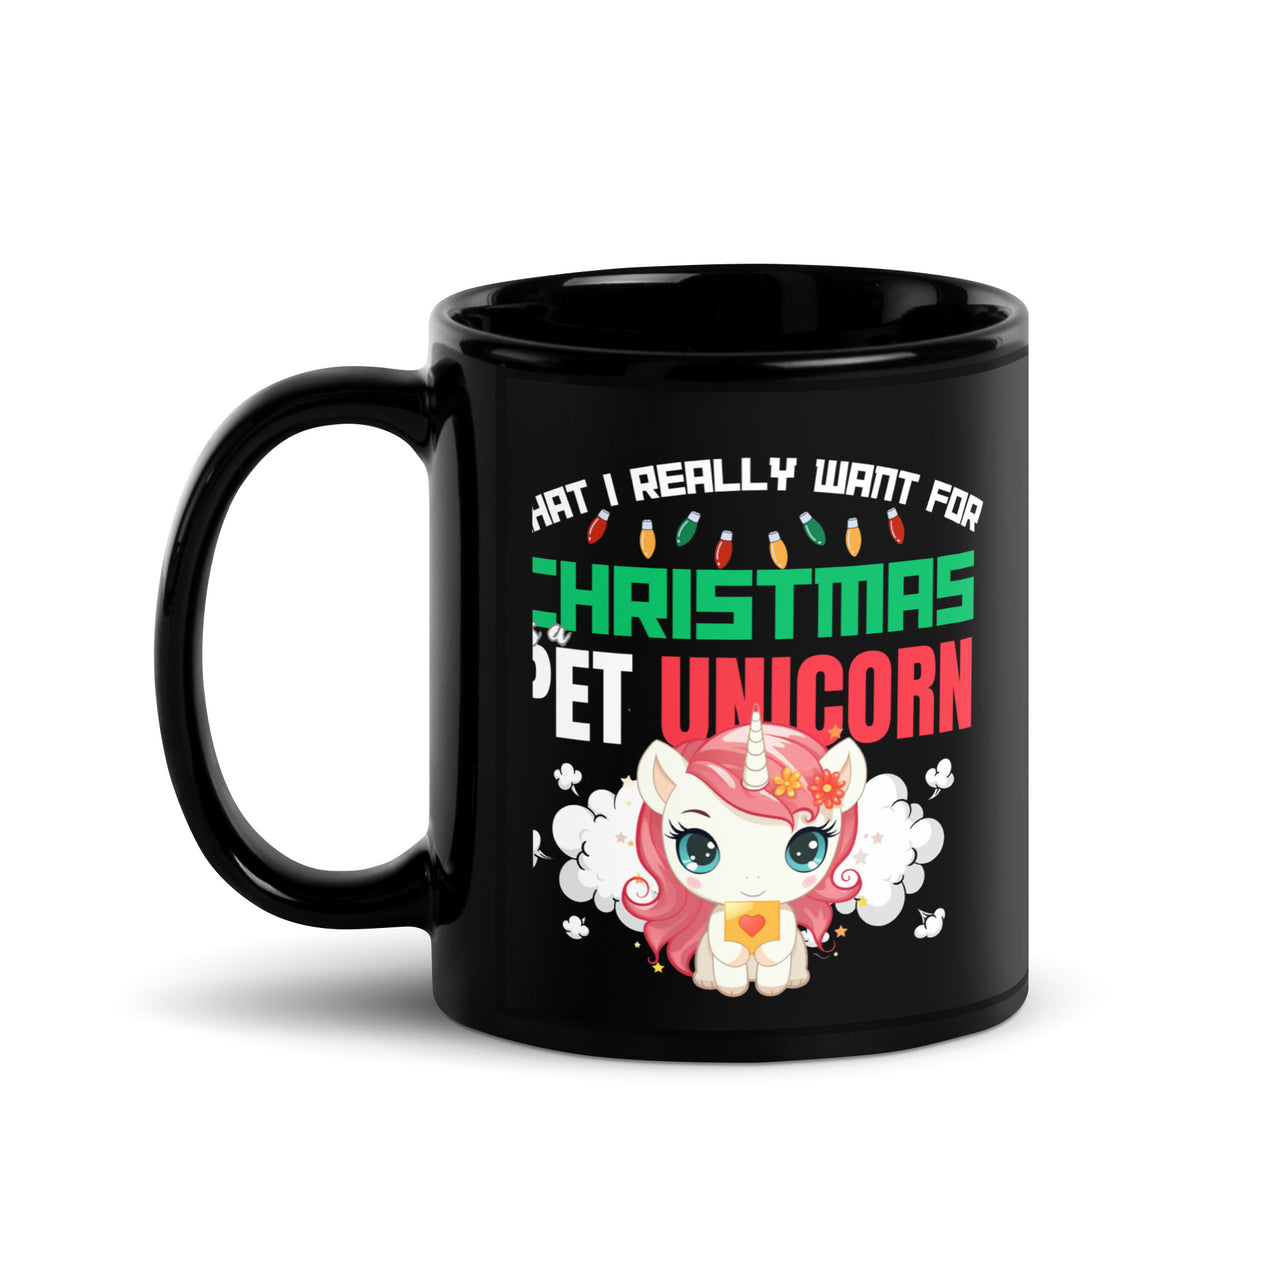 A Pet Unicorn for Magical Holiday Humor Black Mug